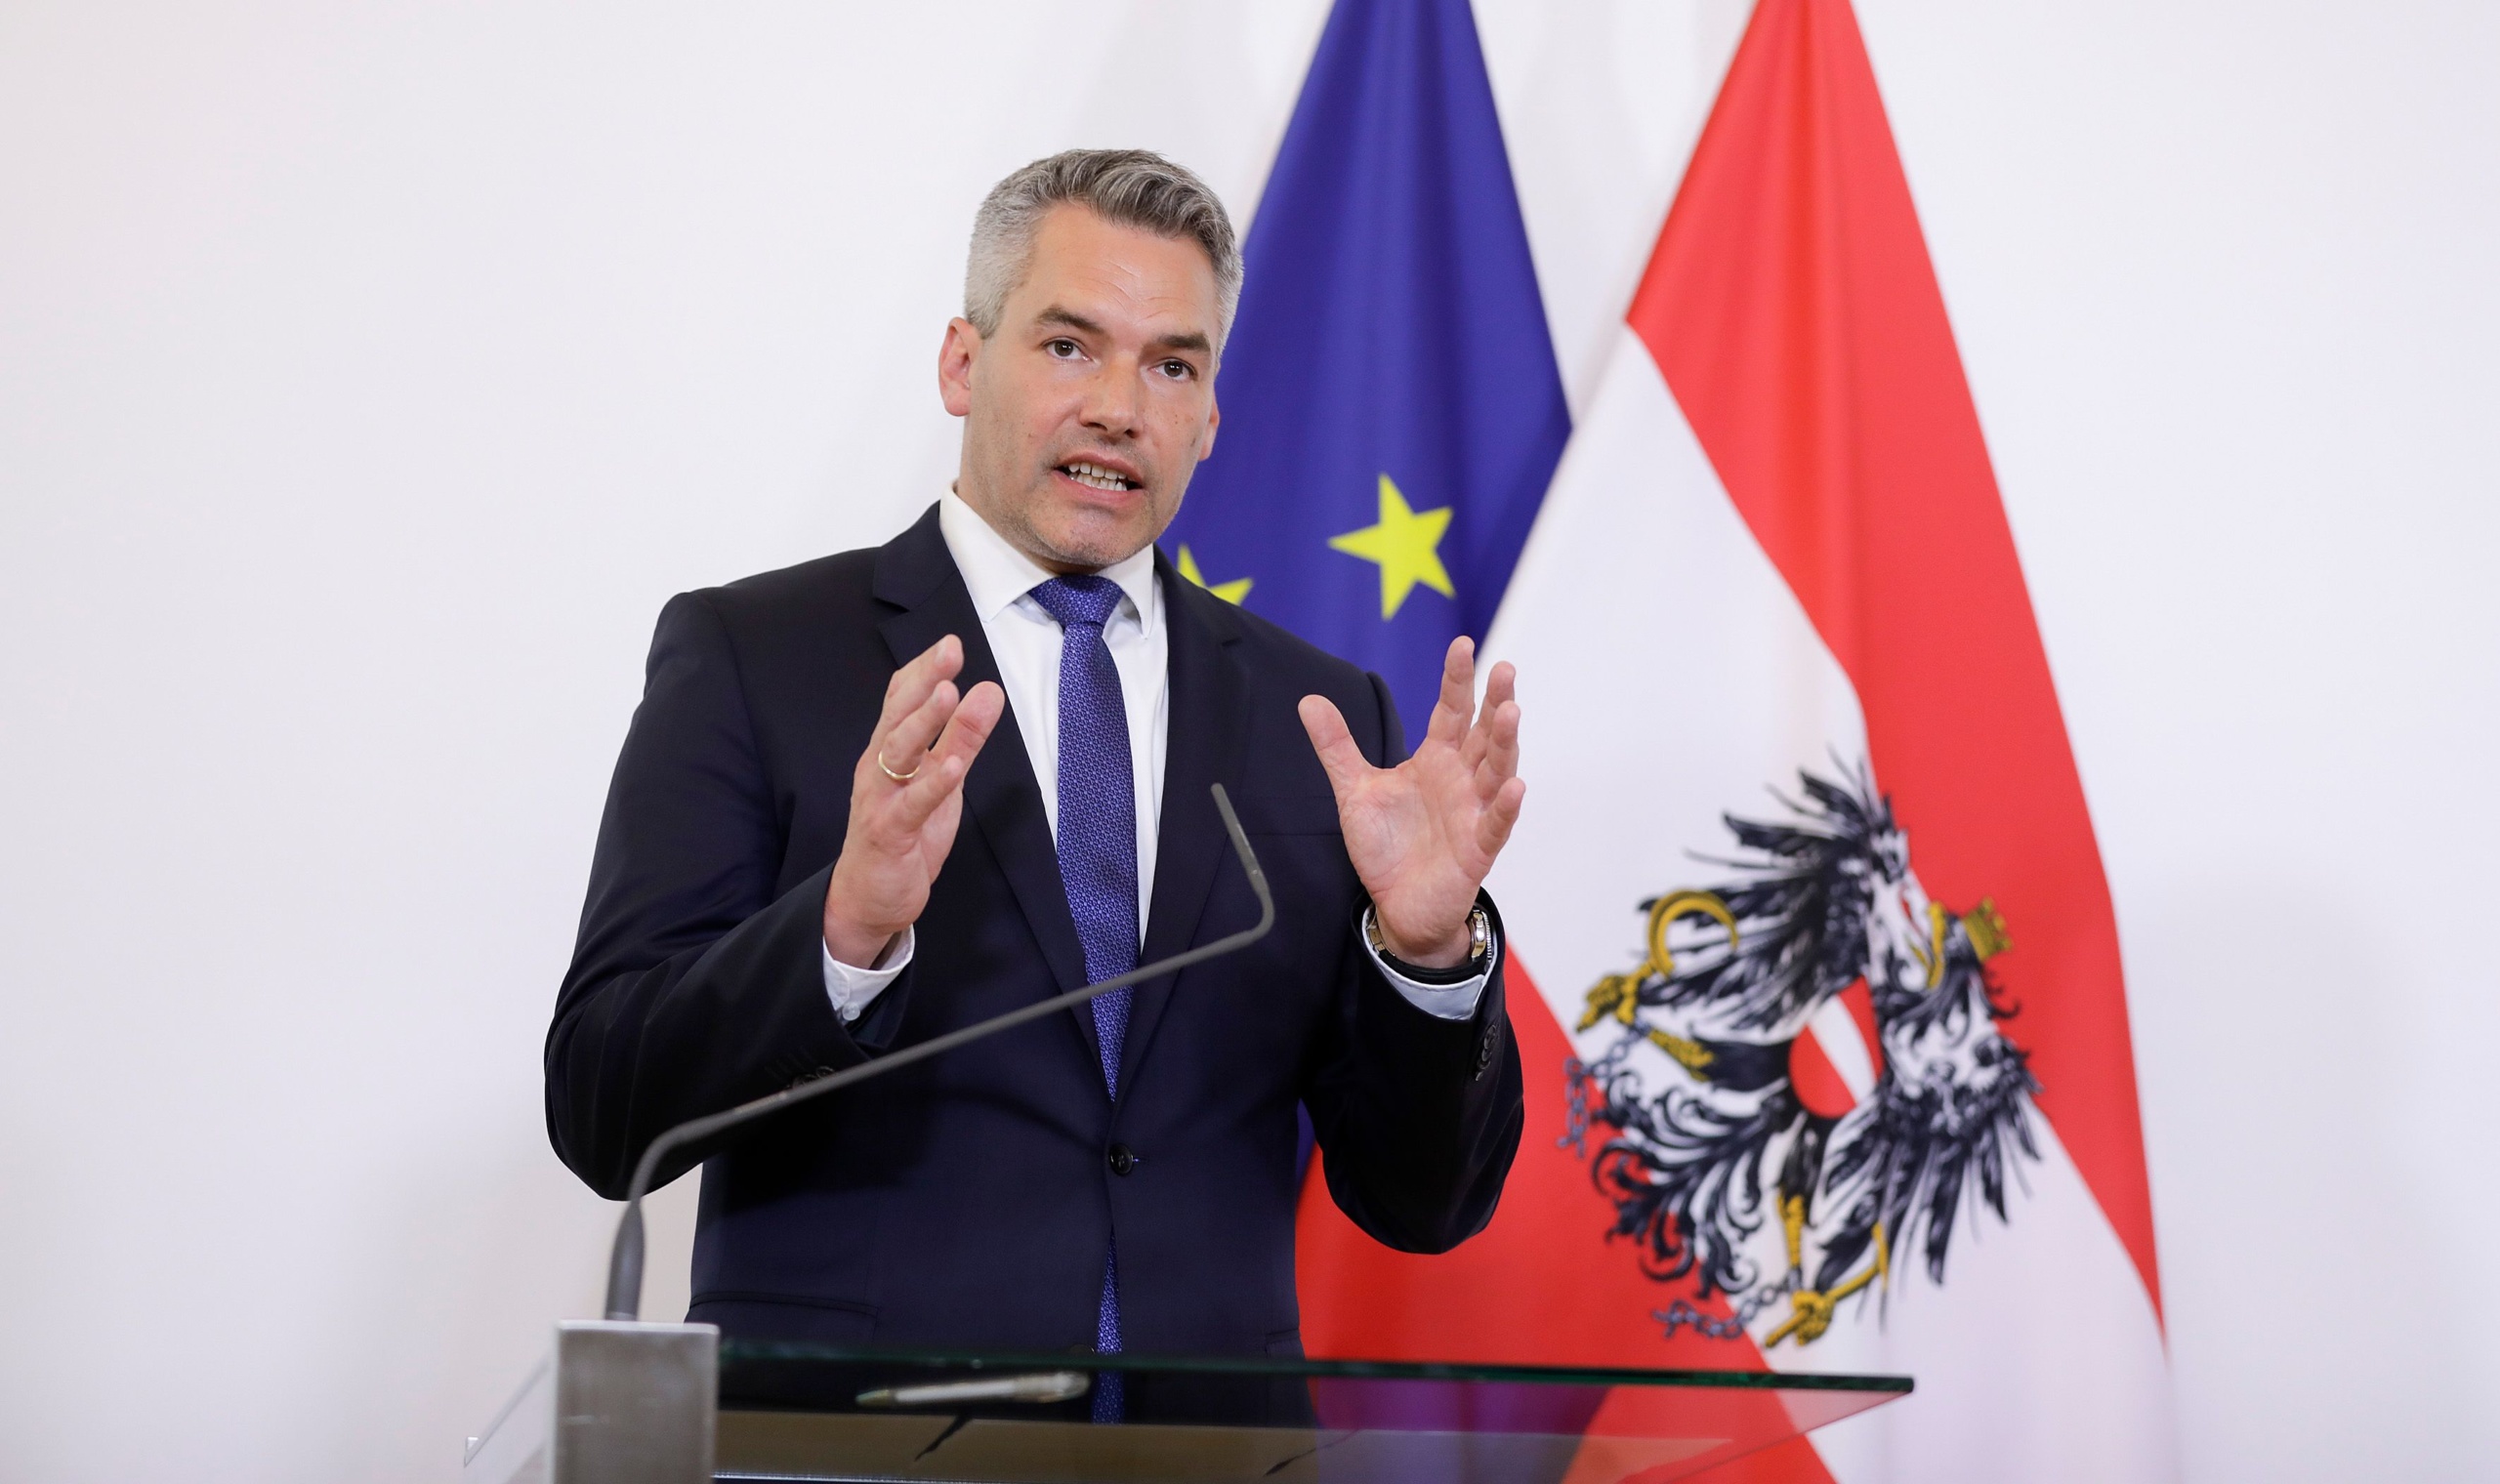 BEČ: Čak 97 posto Austrijanaca osjeća se sigurno u svojoj zemlji